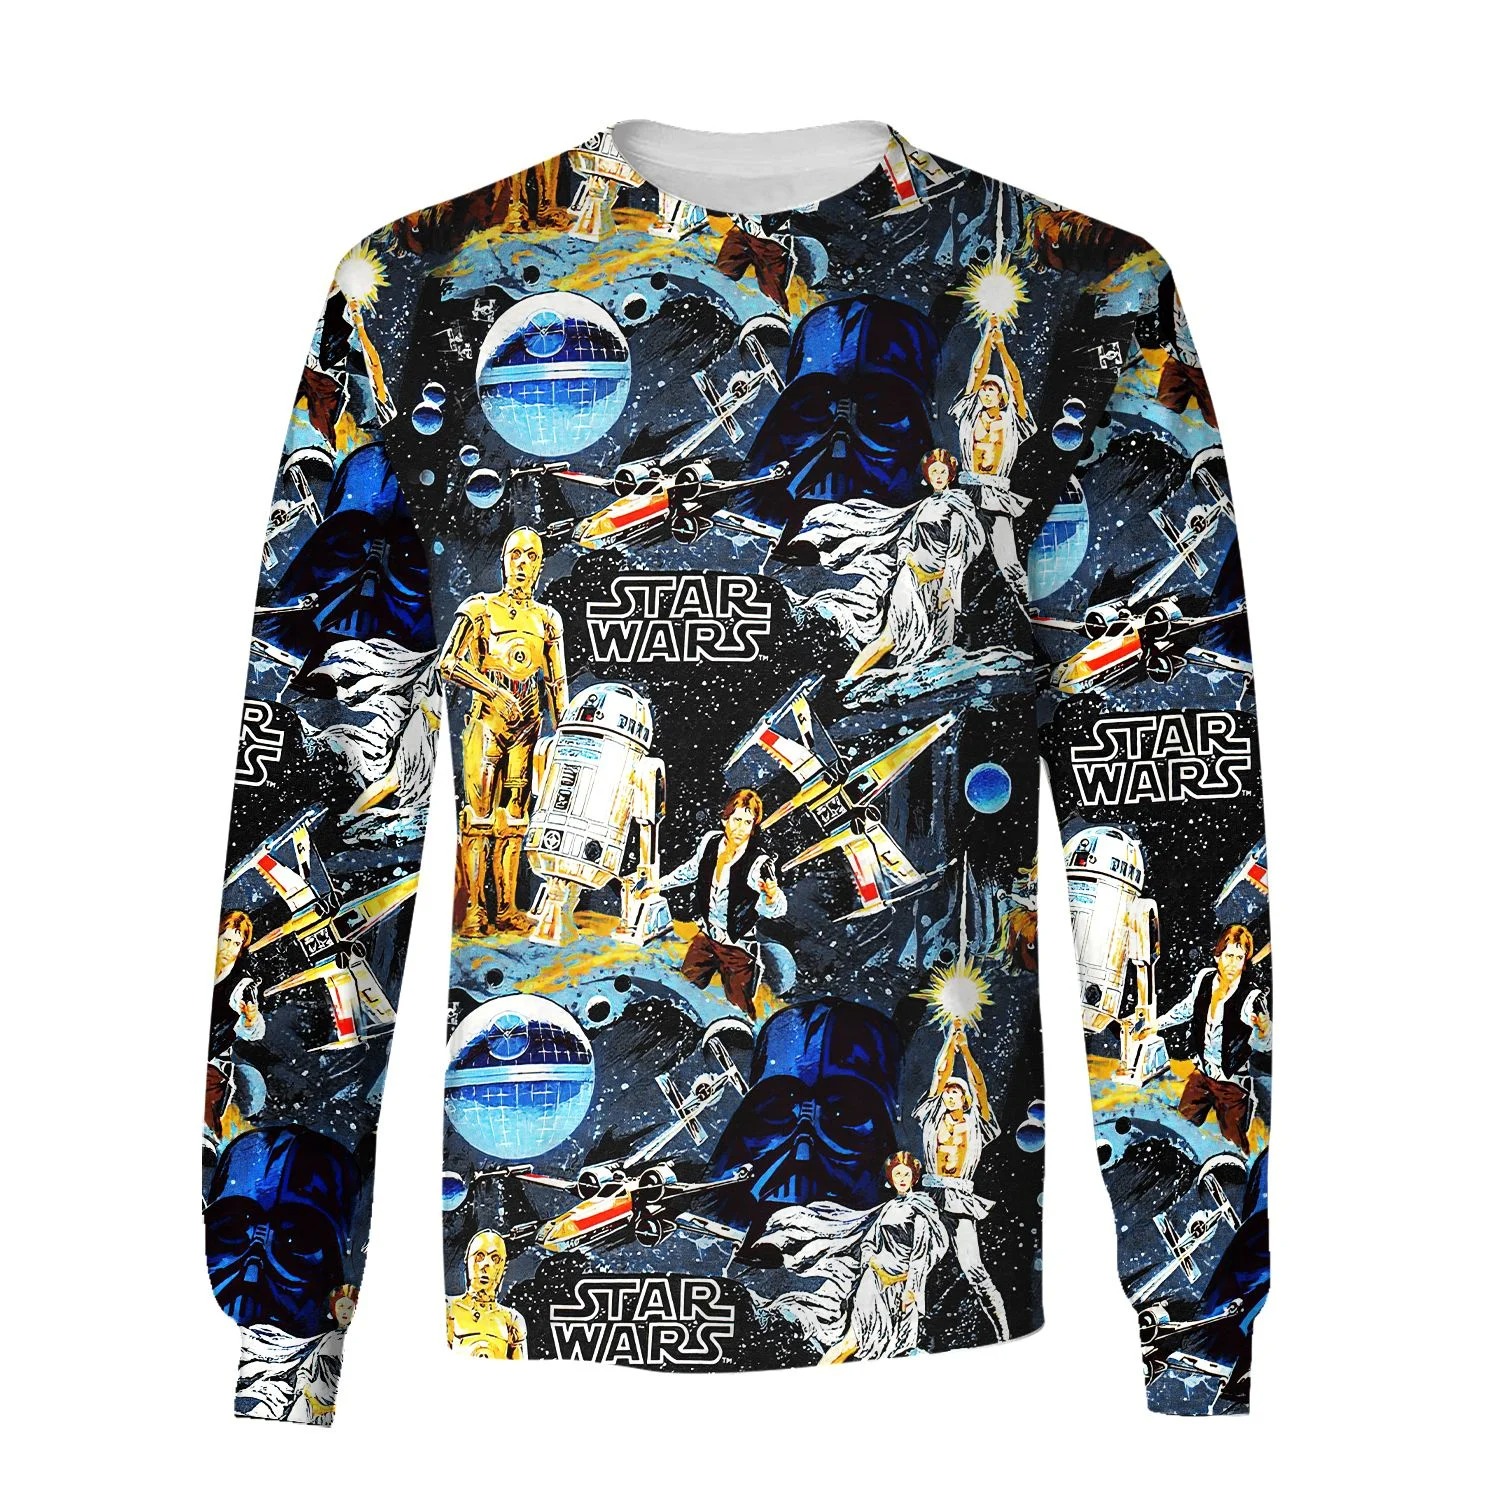 Star Wars 3d over print hoodie and sweatshirt (1)